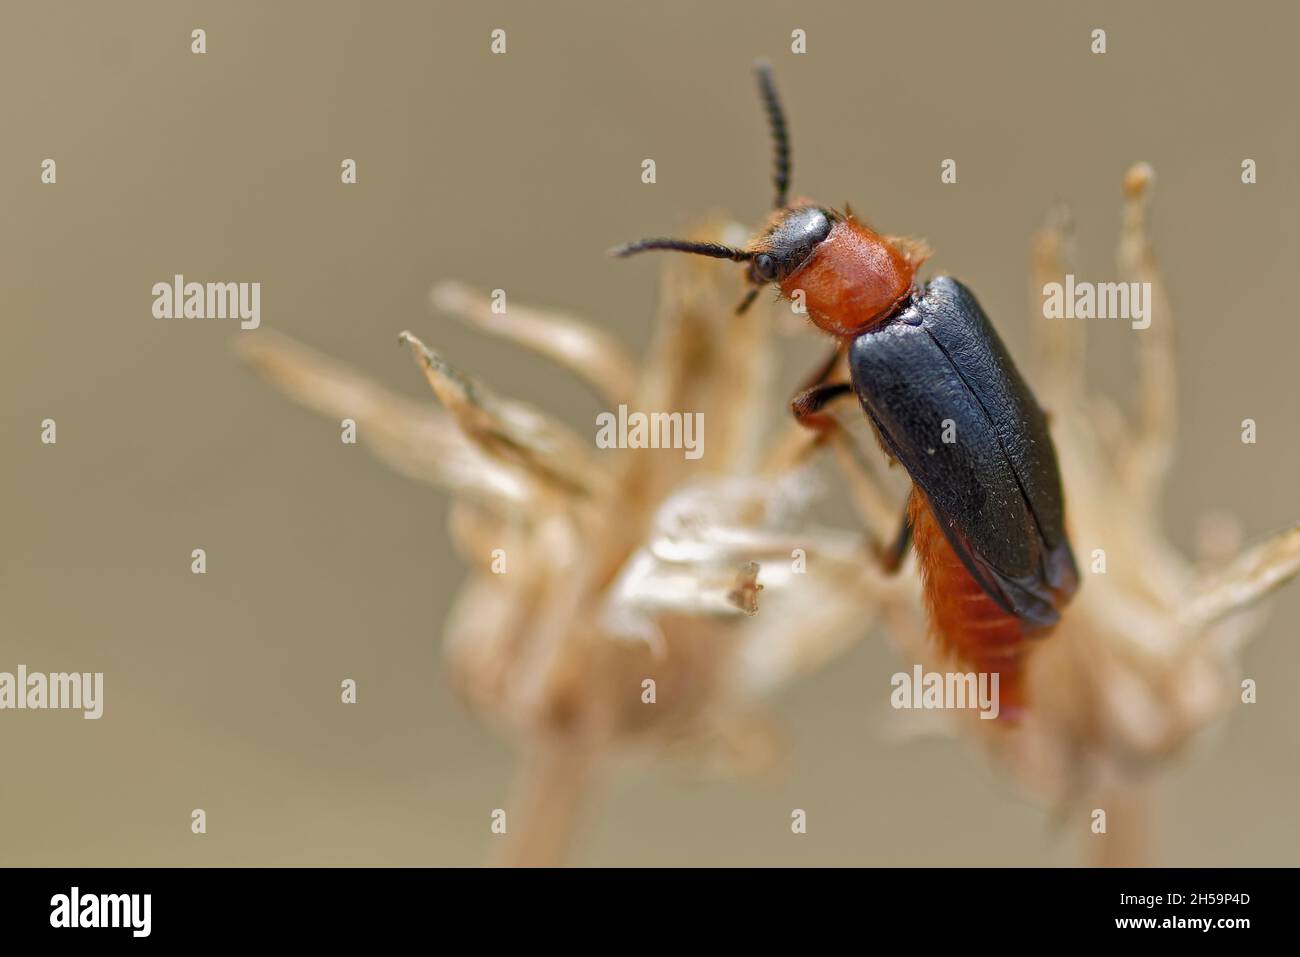 Cantharis pellucida, comúnmente llamado 'escarabajo Soldier'. Foto de stock